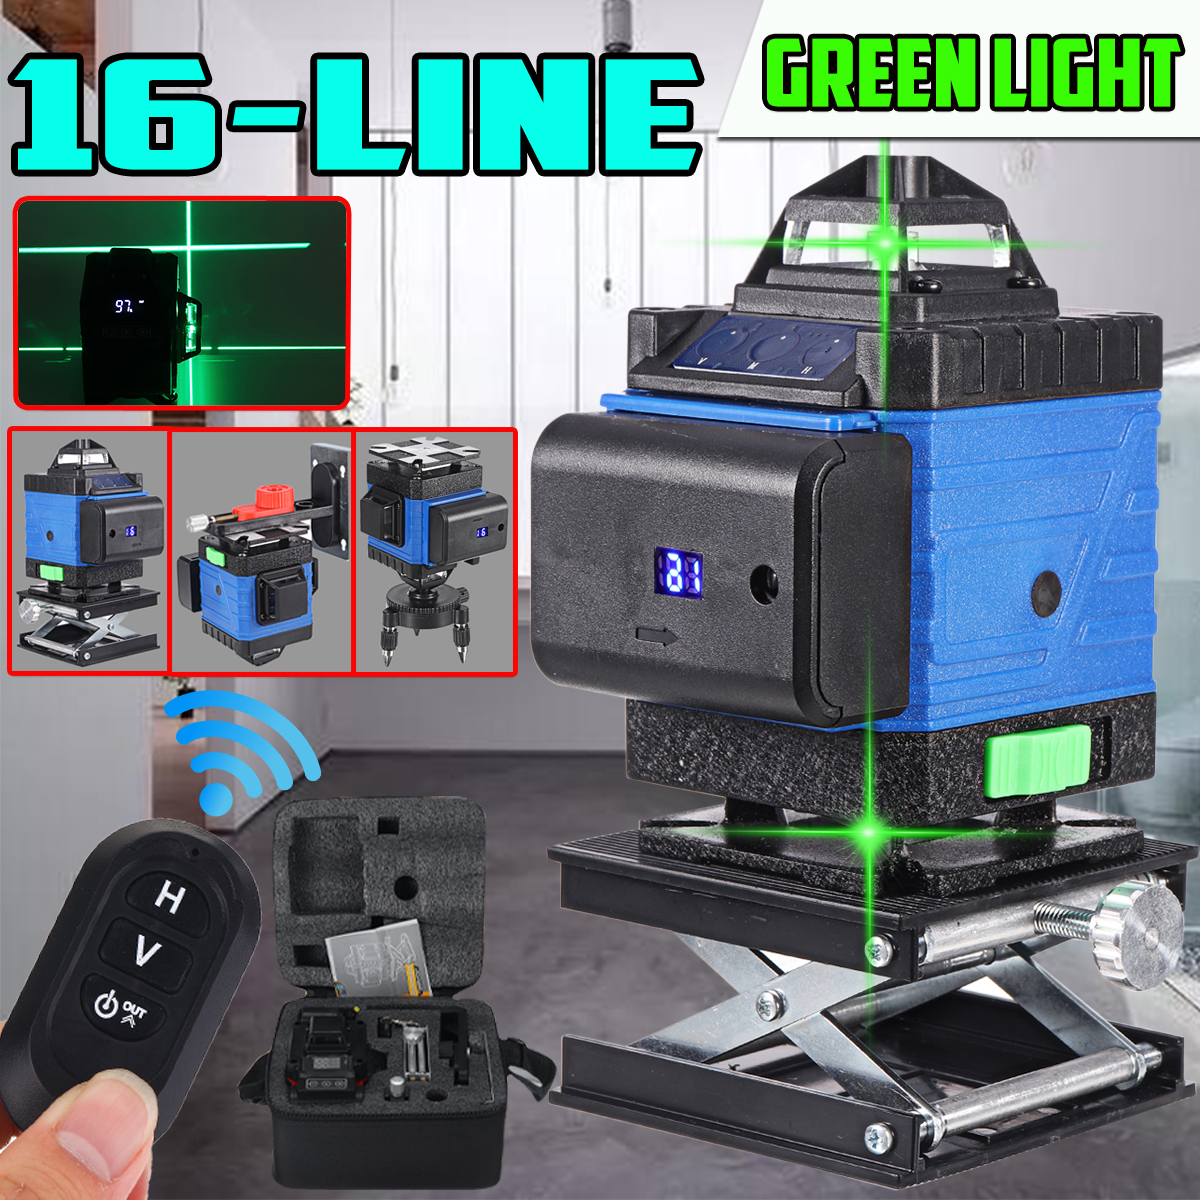 3D-16Line-Green-Light-Laser-Level-Digital-Self-Leveling-360deg-Rotary-Measuring-1741315-1